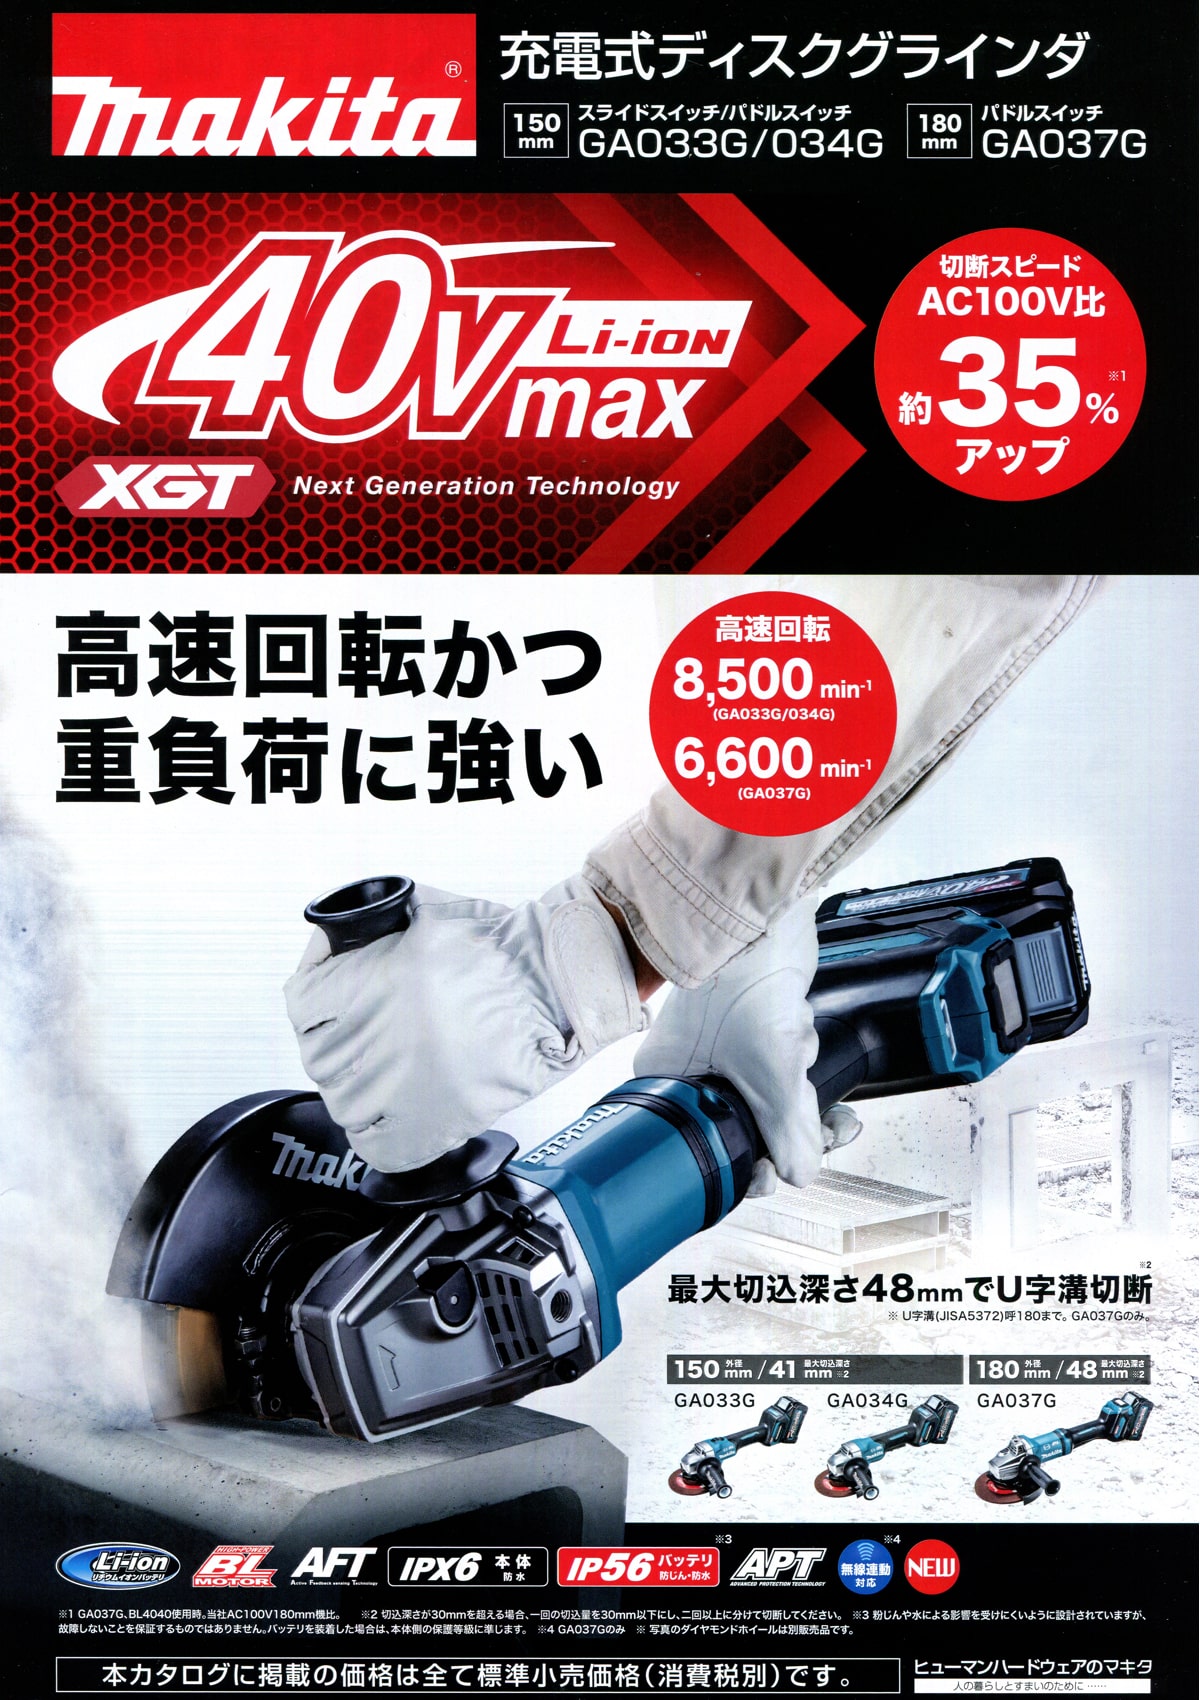 マキタ GA037GRMX 40Vmax充電式ディスクグラインダ 180mm ウエダ金物【公式サイト】